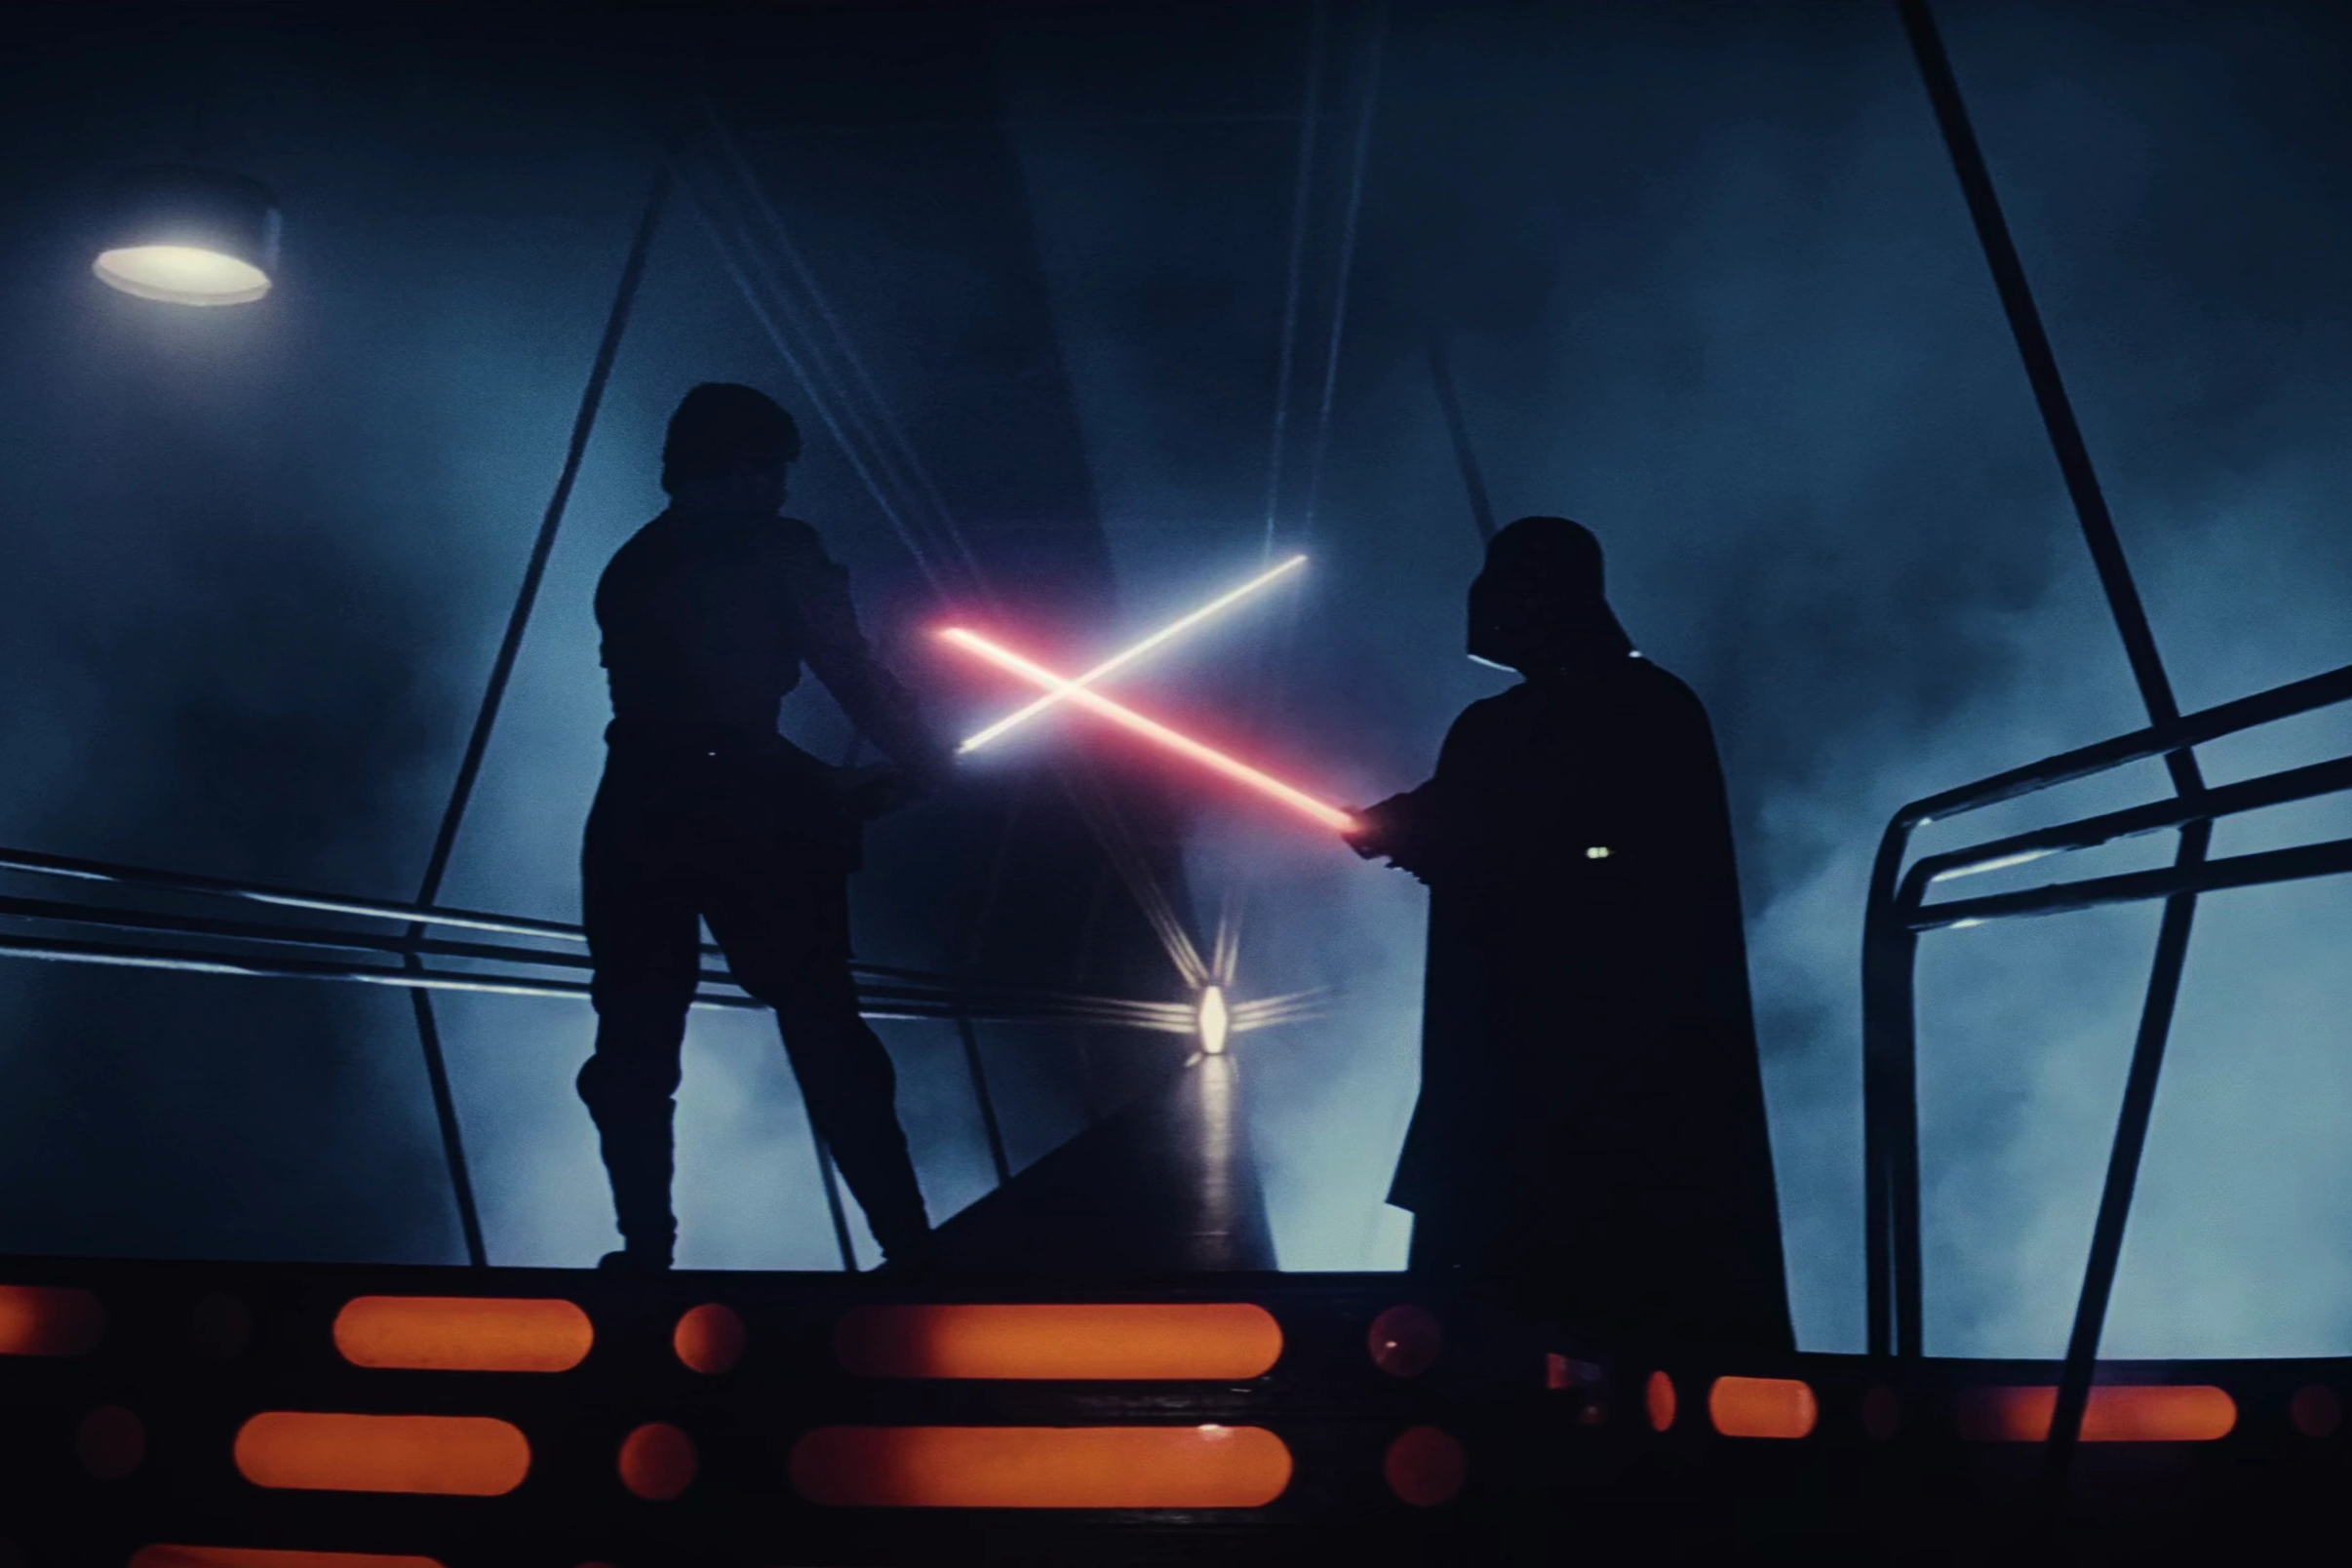 Luke y Darth Vader cruzan sables de luz en Star Wars: Episodio V - El Imperio Contraataca.